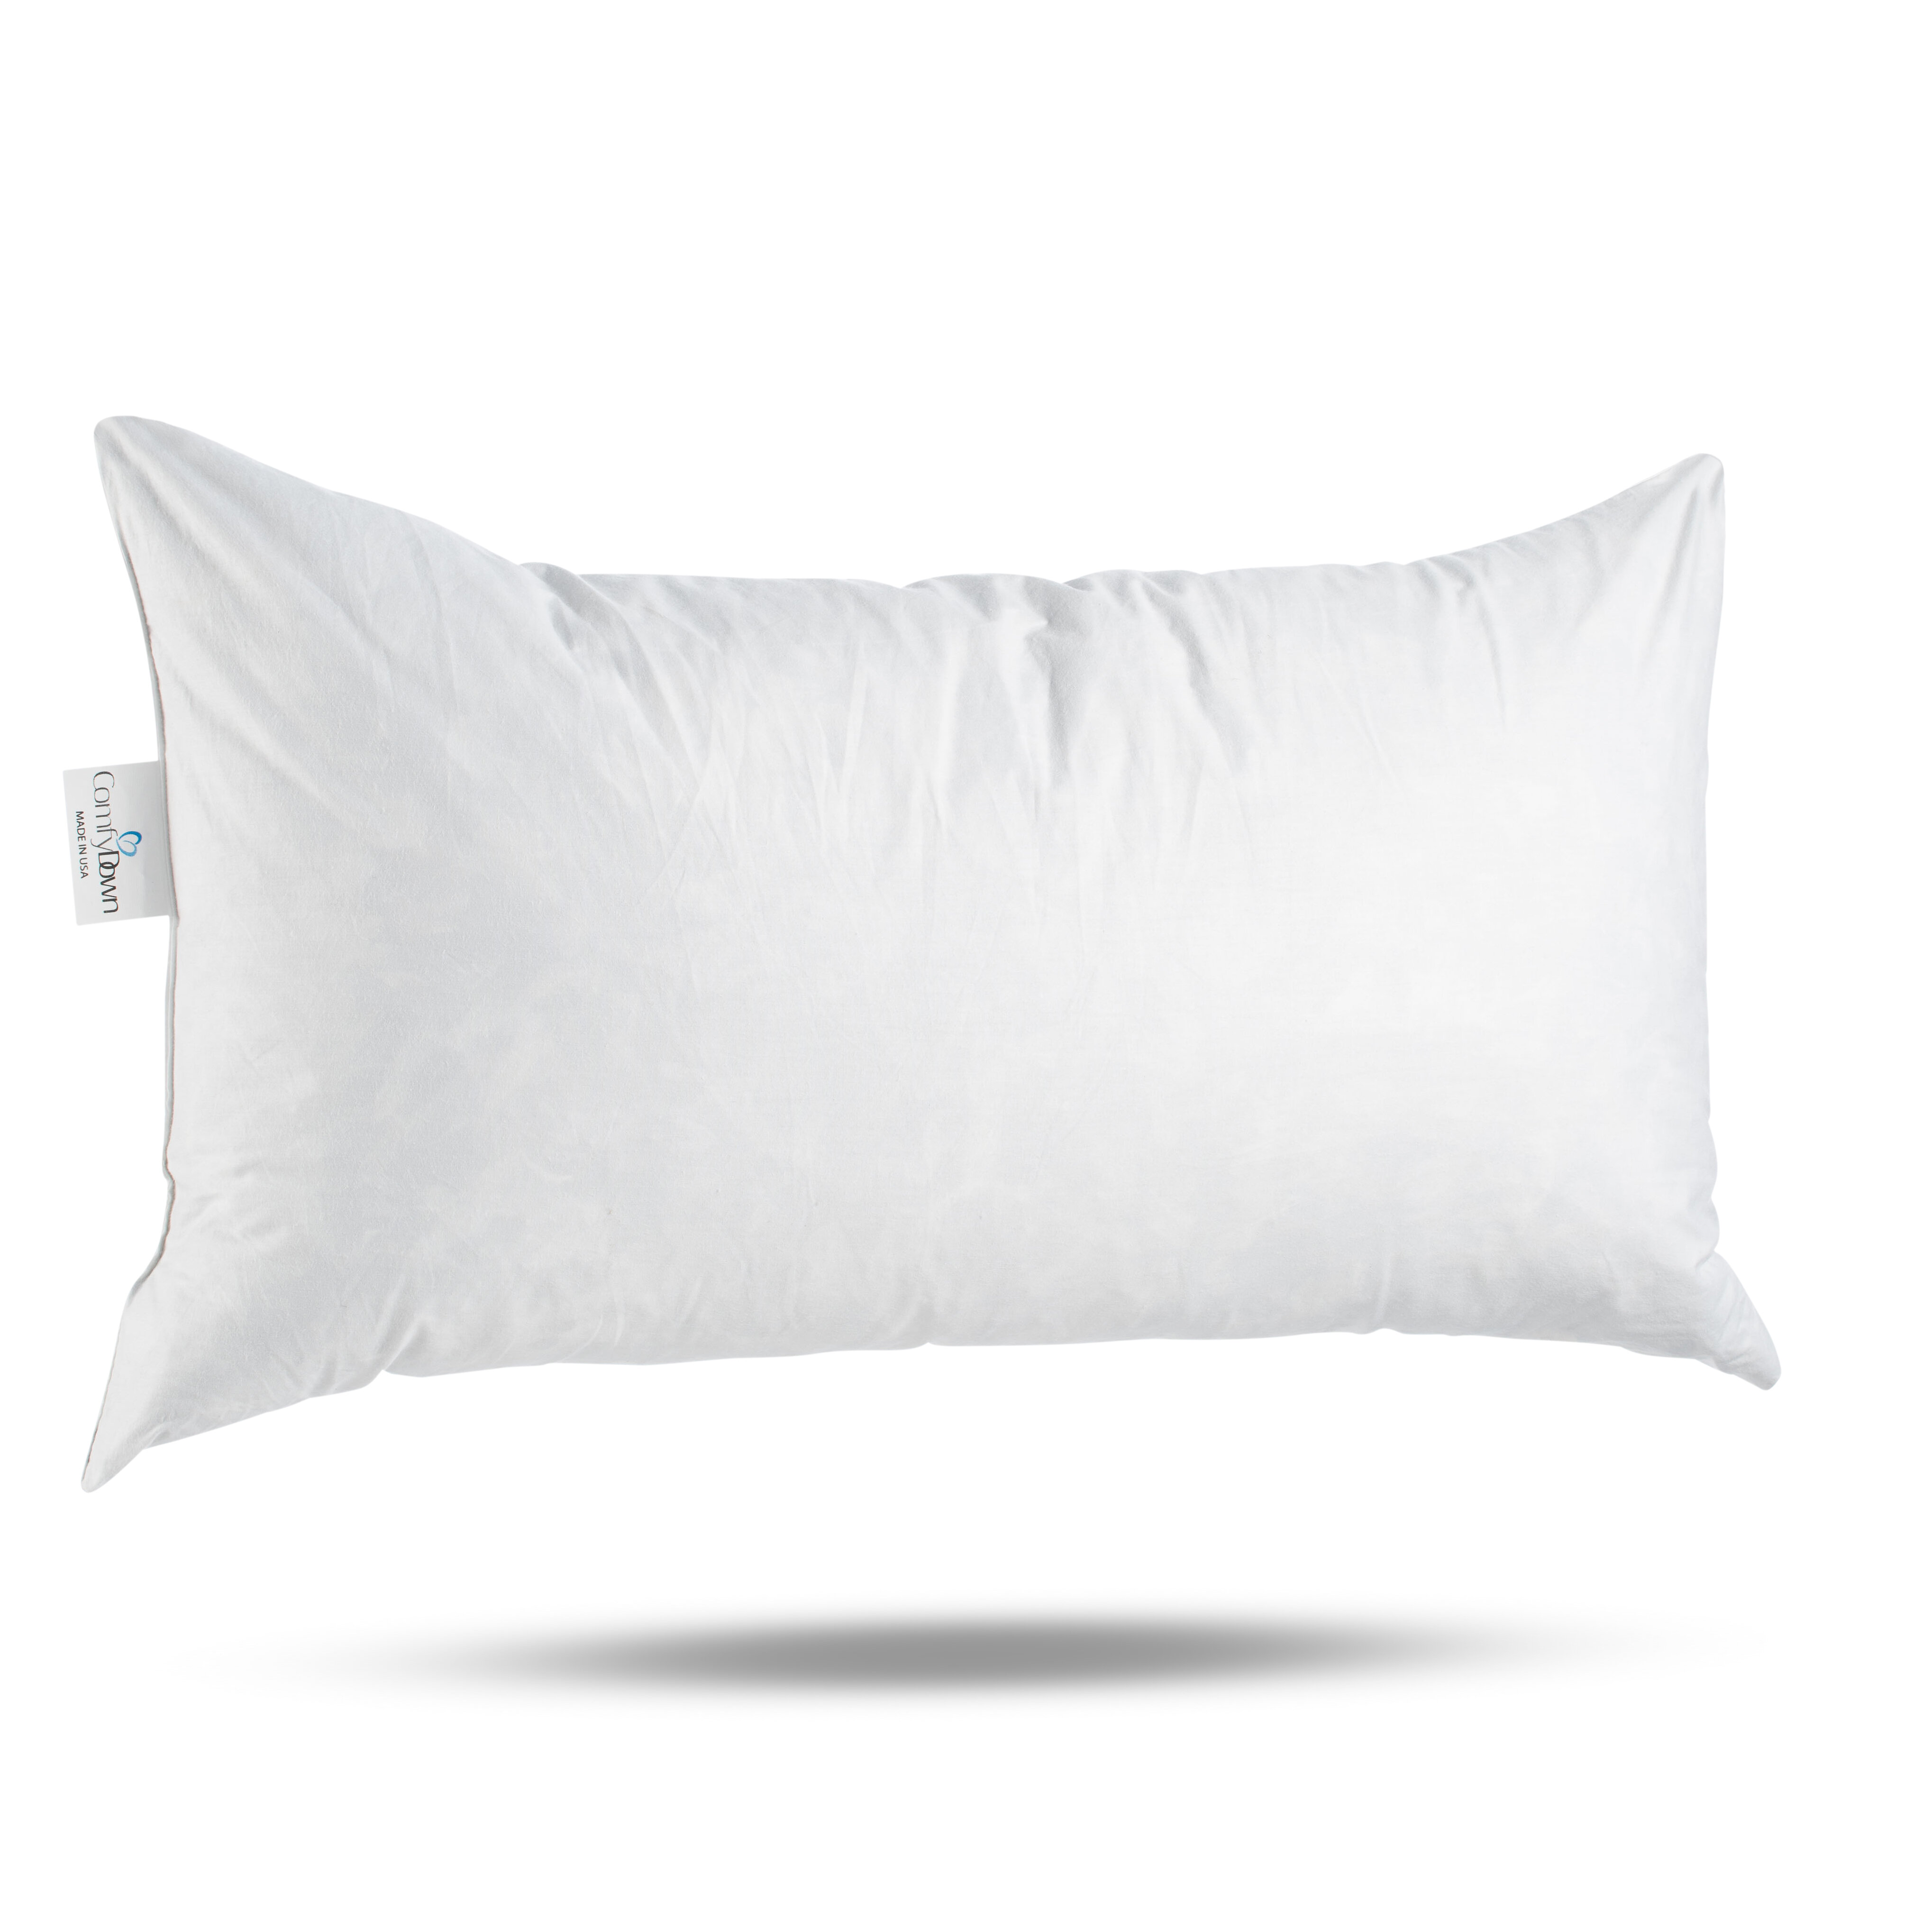 https://assets.wfcdn.com/im/85655923/compr-r85/1167/116795121/comfydown-95-feather-5-down-rectangle-decorative-pillow-insert-sham-stuffer.jpg